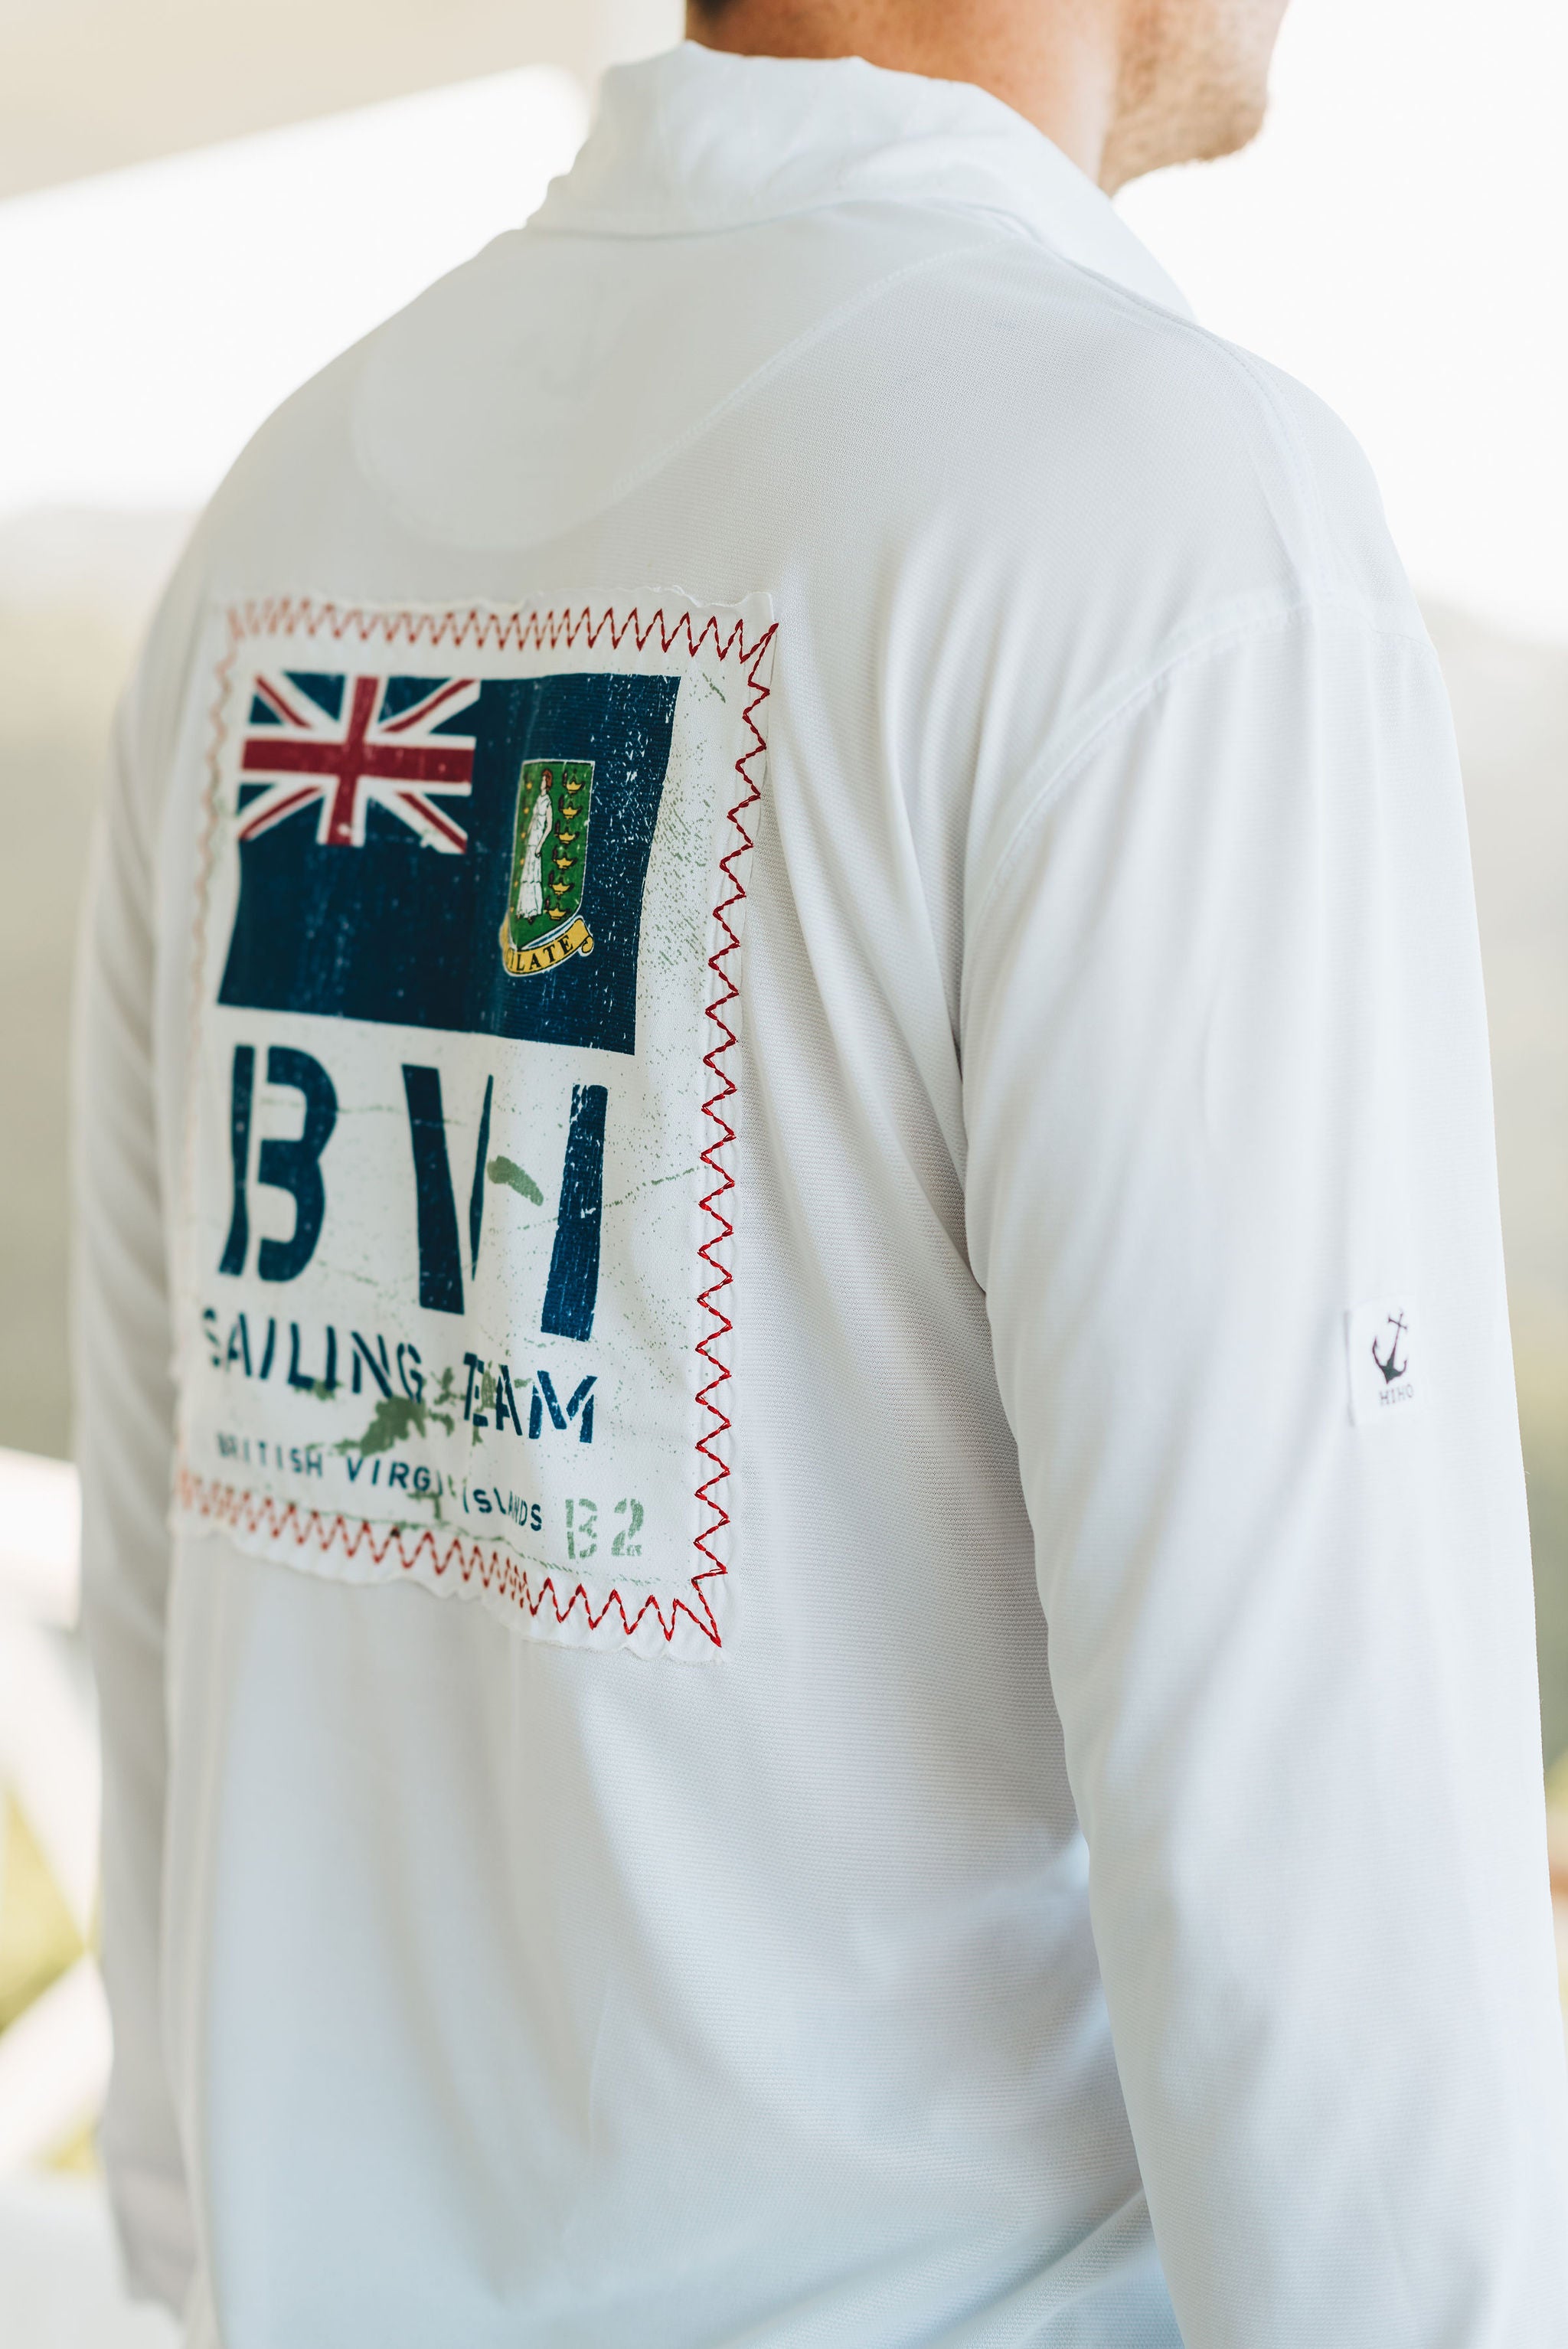 R3 Bvi Sailing Team UPF50 Shirt - White White / M